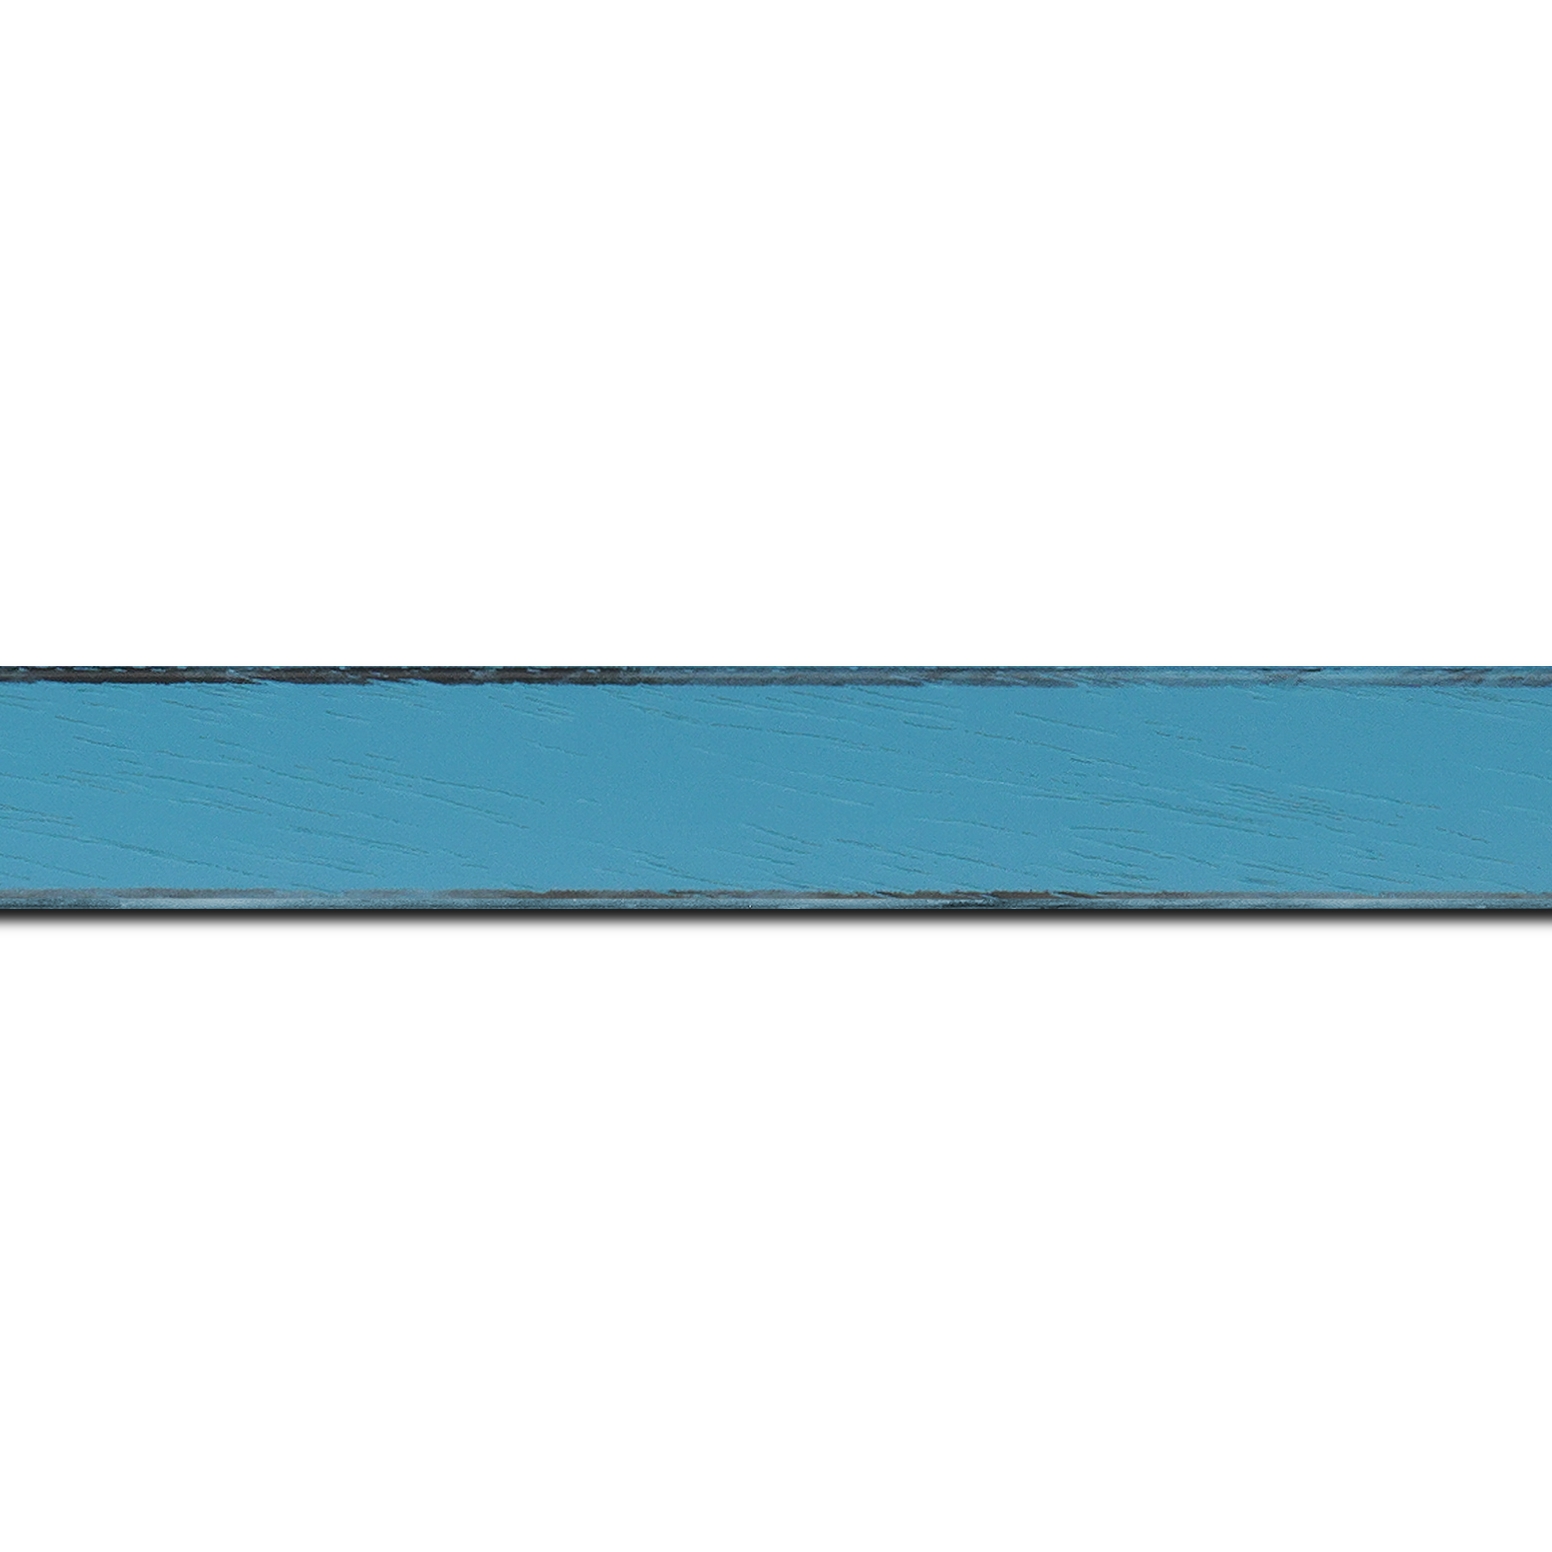 Baguette longueur 1.40m bois profil concave largeur 2.4cm couleur turquoise tonique  satiné  arêtes essuyés noircies de chaque coté